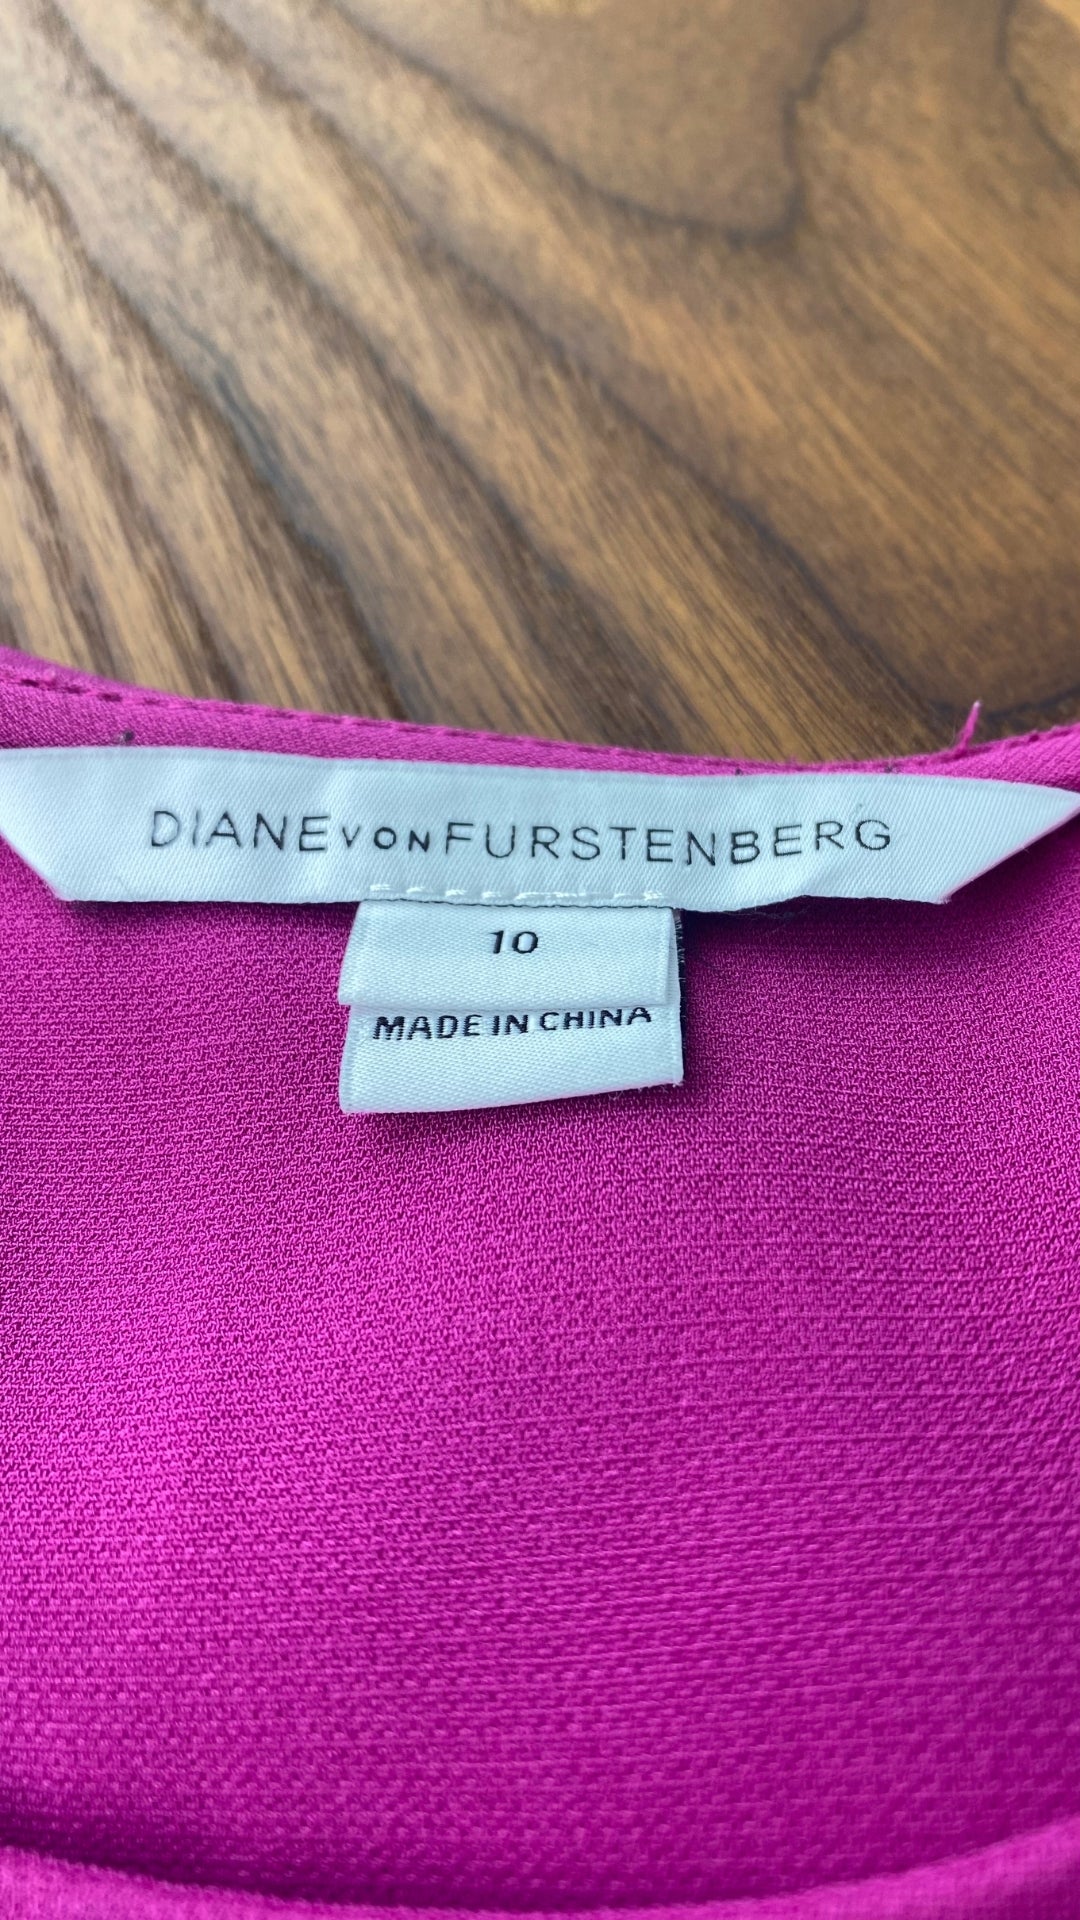 Robe ample avec poches et boutons argentés aux épaules, Diane von Furstenberg, taille 10. Vue de l'étiquette de marque et taille.